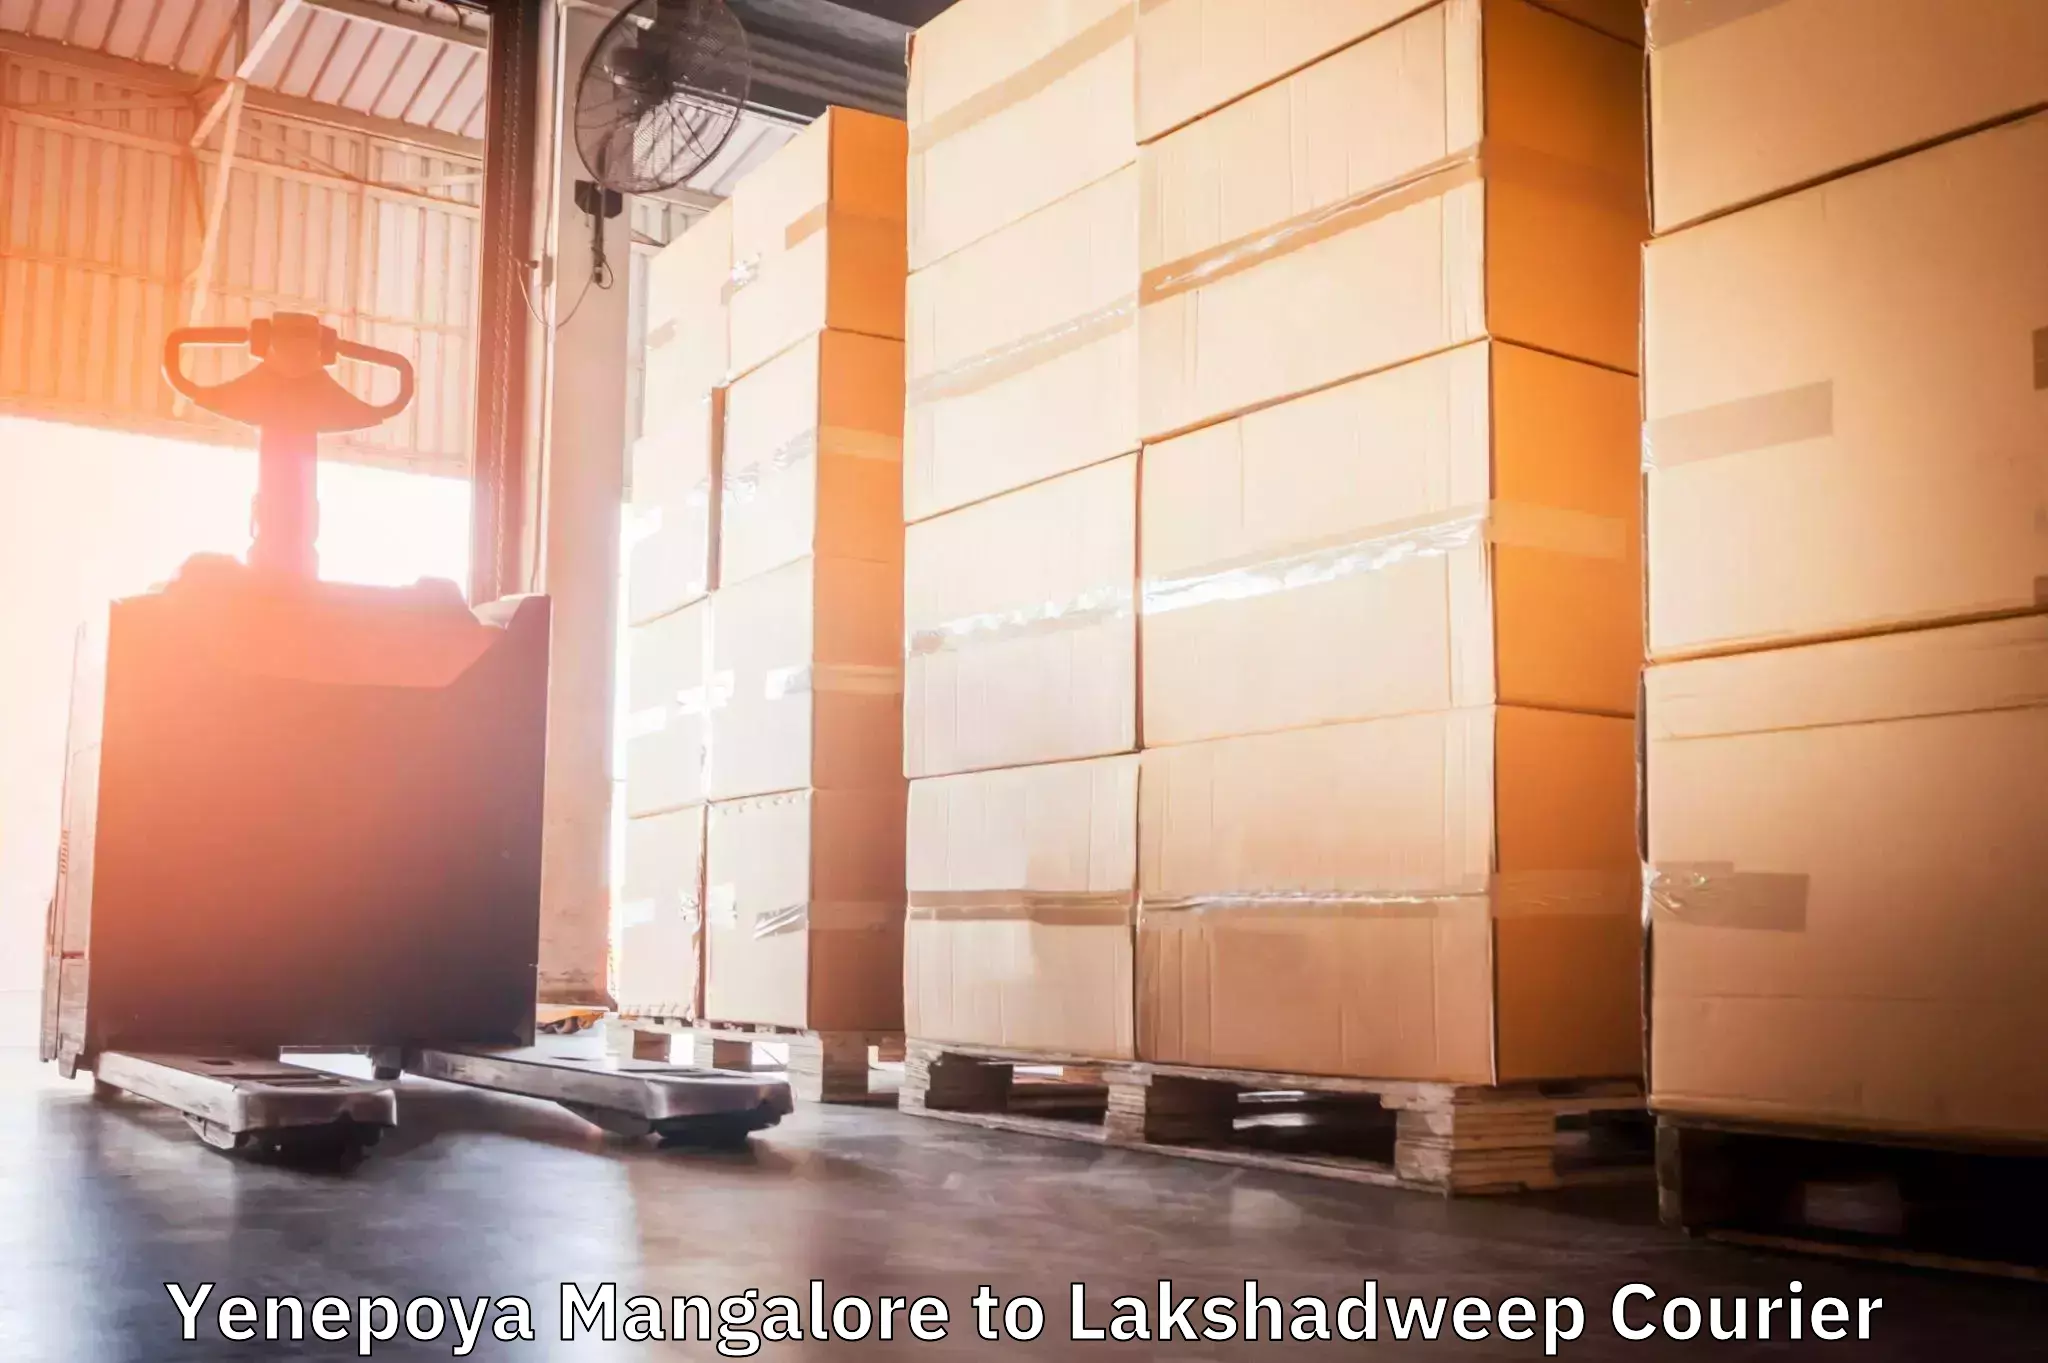 Professional courier handling Yenepoya Mangalore to Lakshadweep